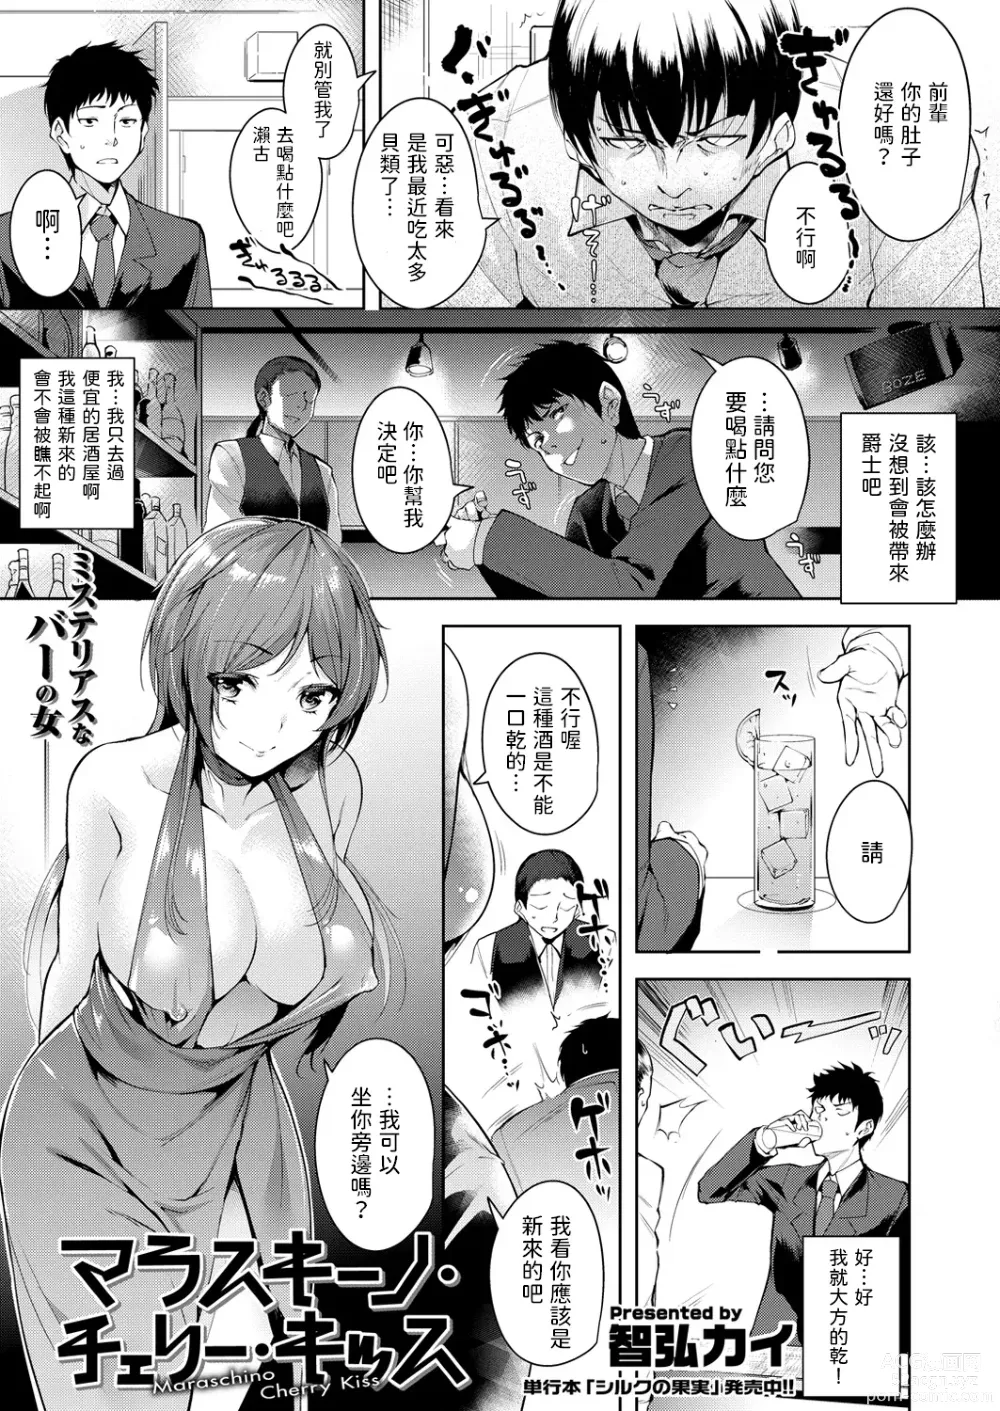 Page 1 of manga Maraschino Cherry Kiss